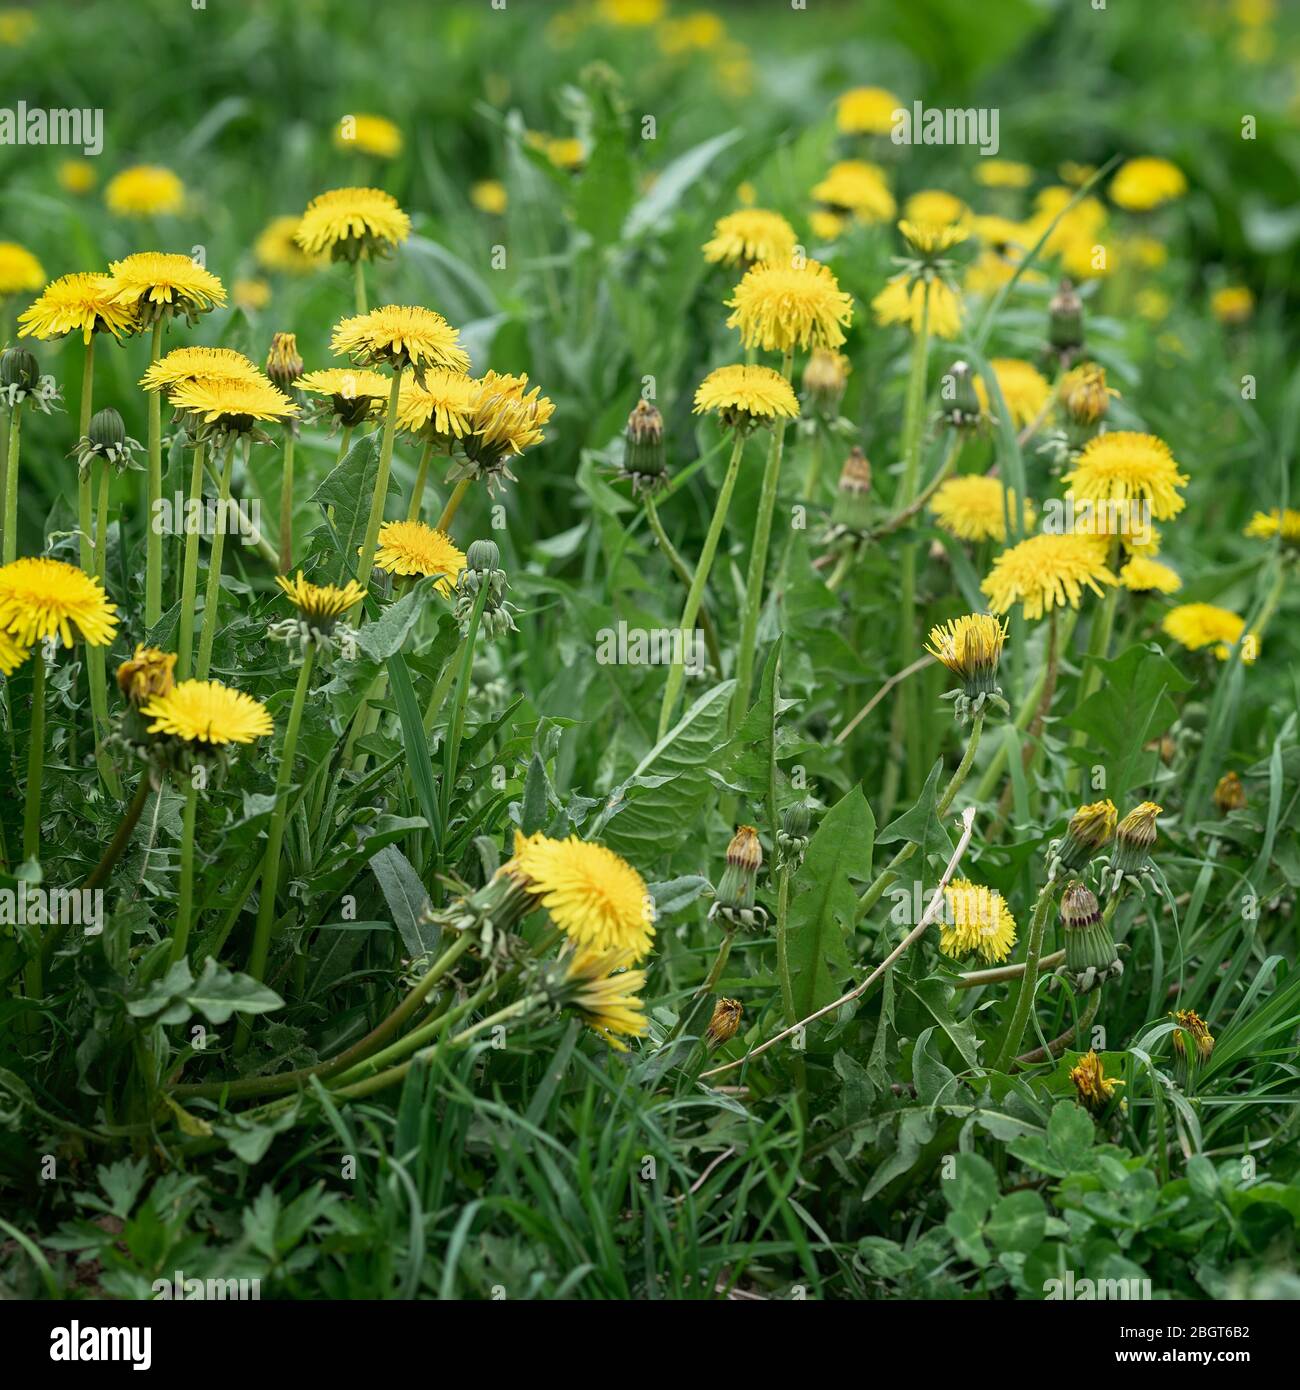 Abstrakt verschwommener Hintergrund der Frühlingsblumen, gelber Löwenzahn in grünem Gras Stockfoto